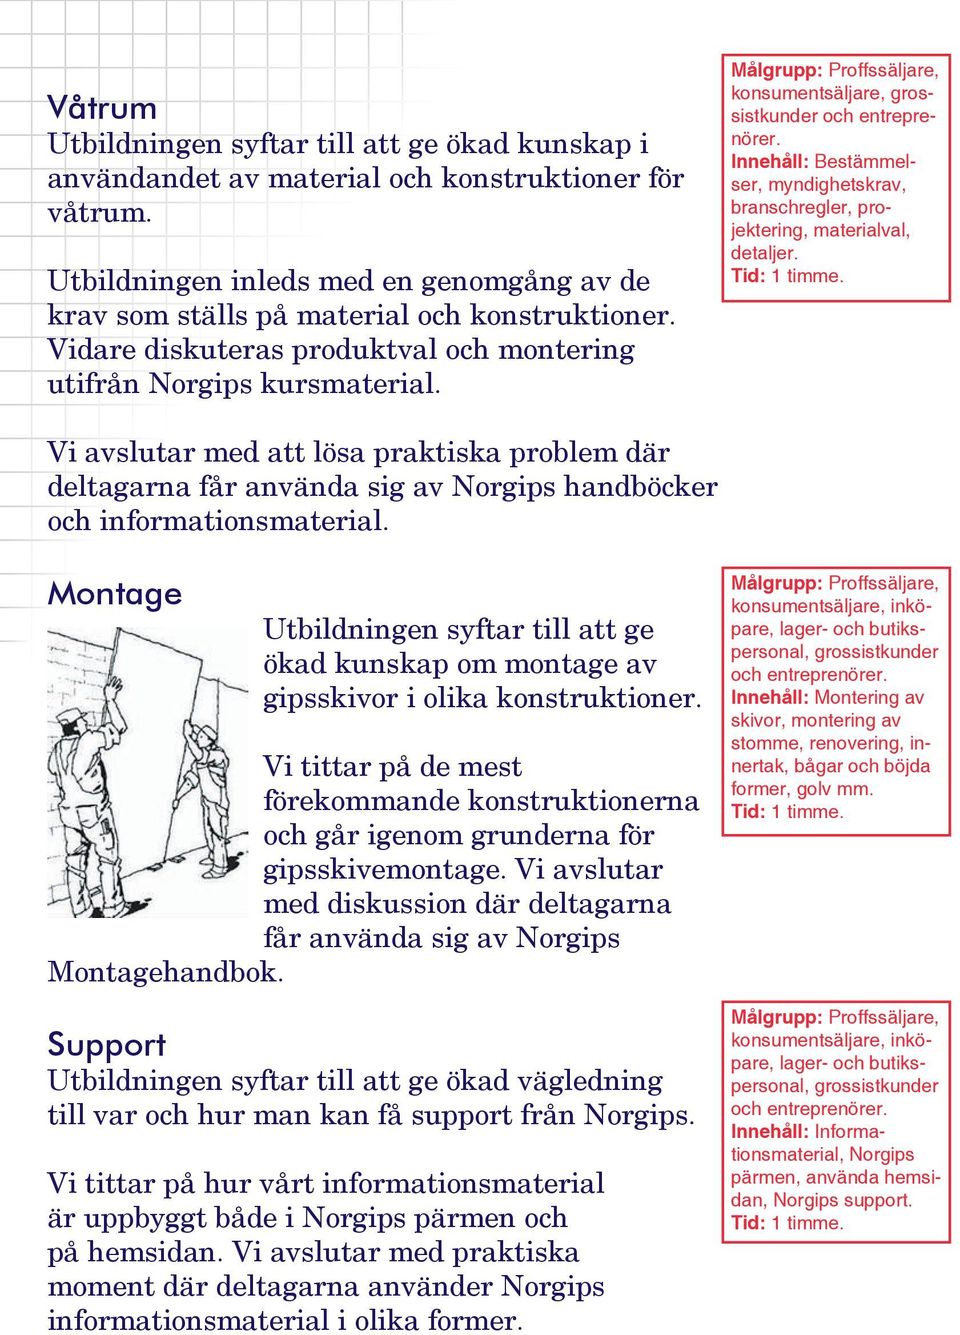 Vi avslutar med att lösa praktiska problem där deltagarna får använda sig av Norgips handböcker och informationsmaterial.